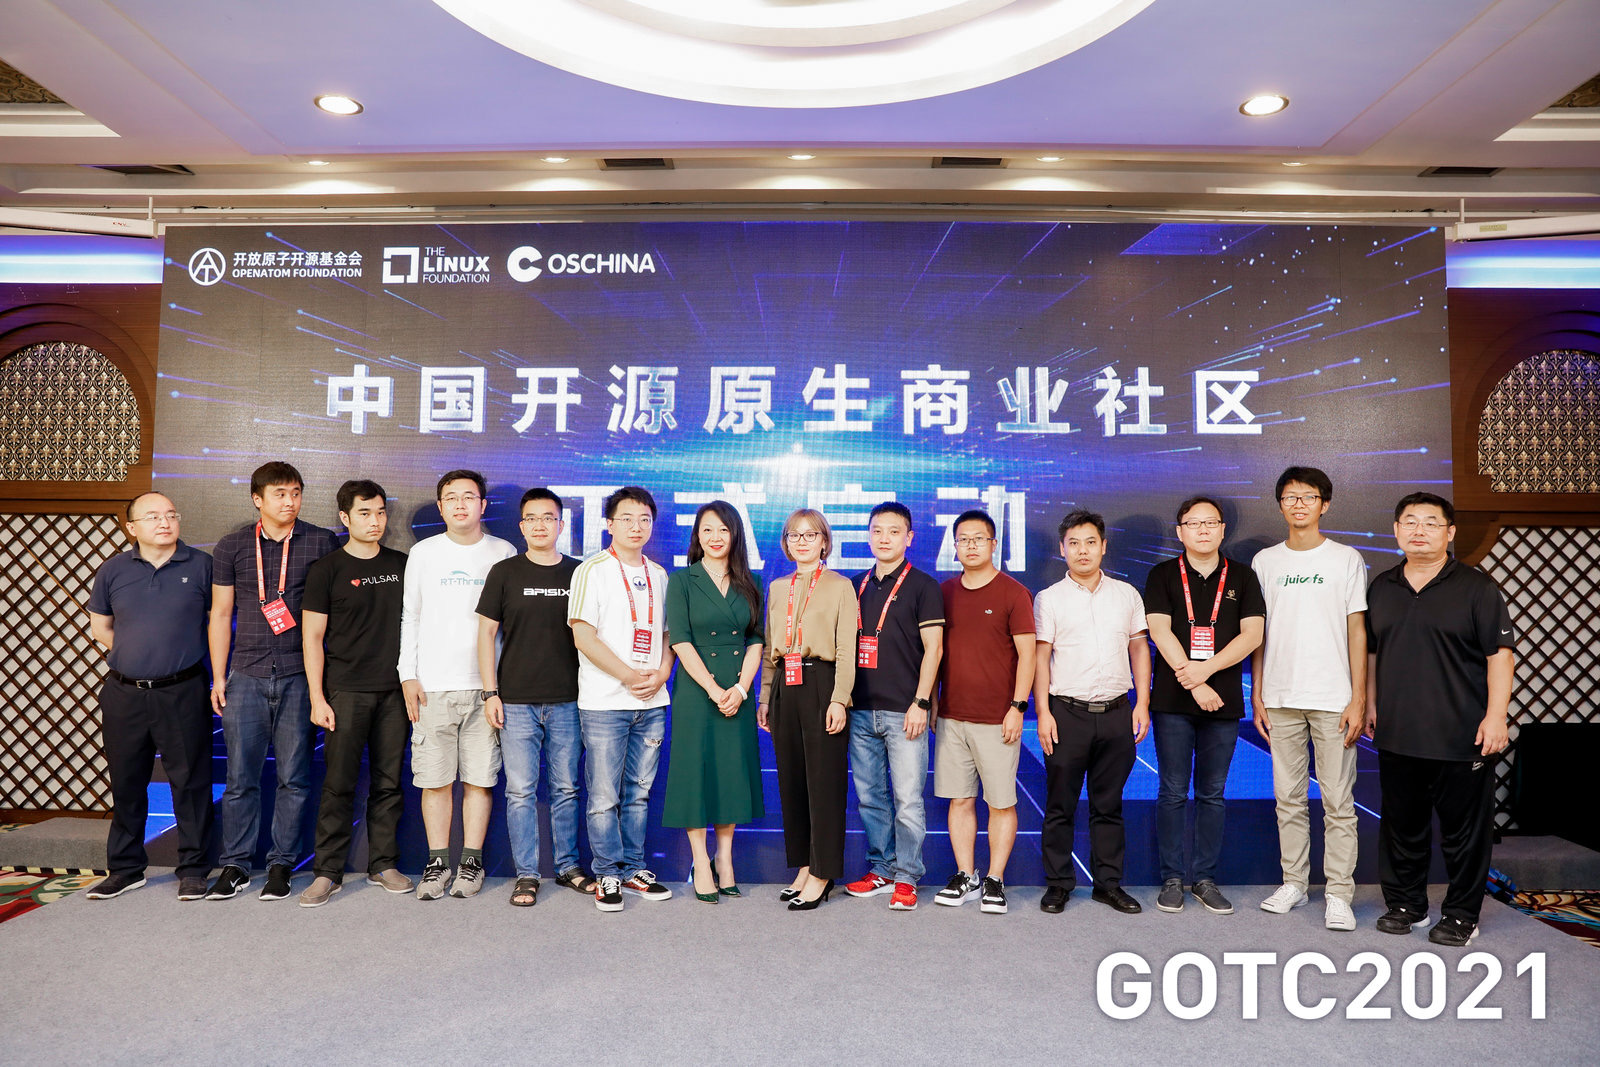 「中国开源原生商业社区」启动